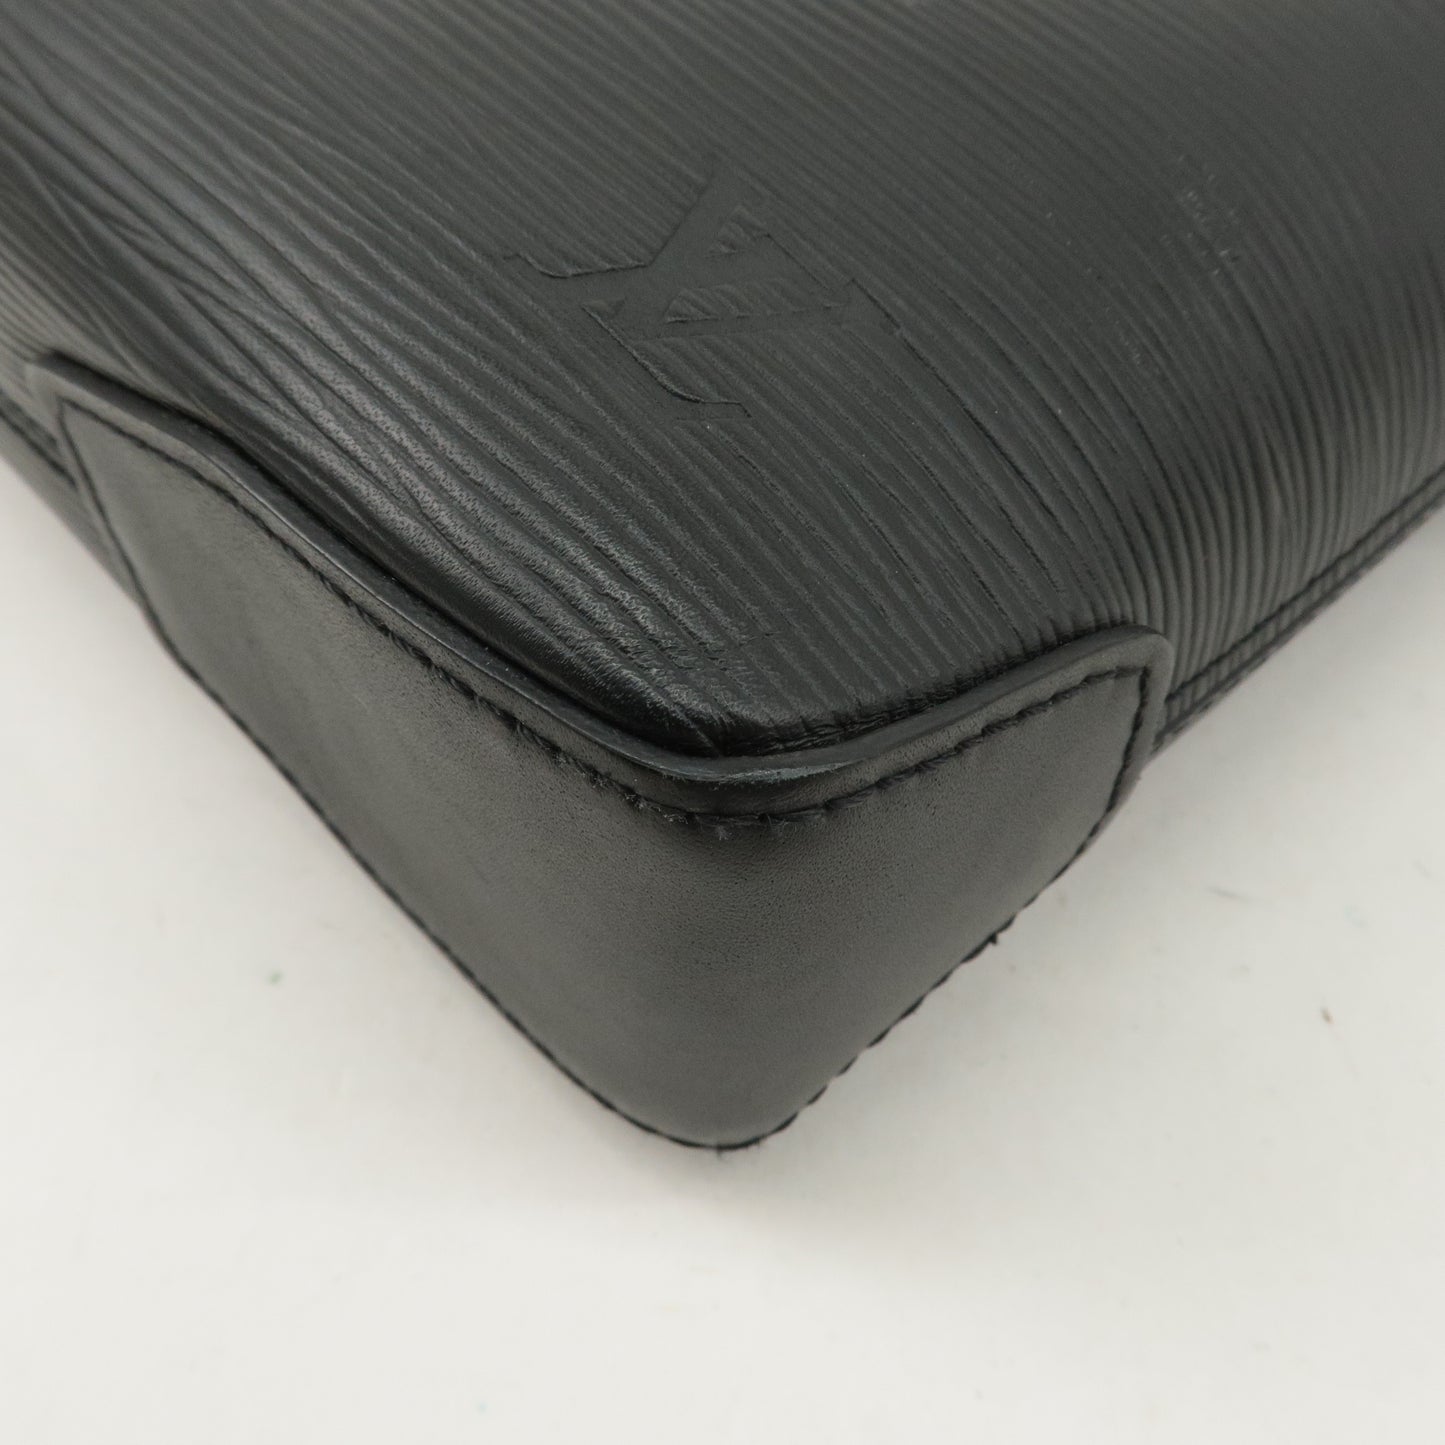 Louis Vuitton Epi Oliver Business Bag Noir Black M51689